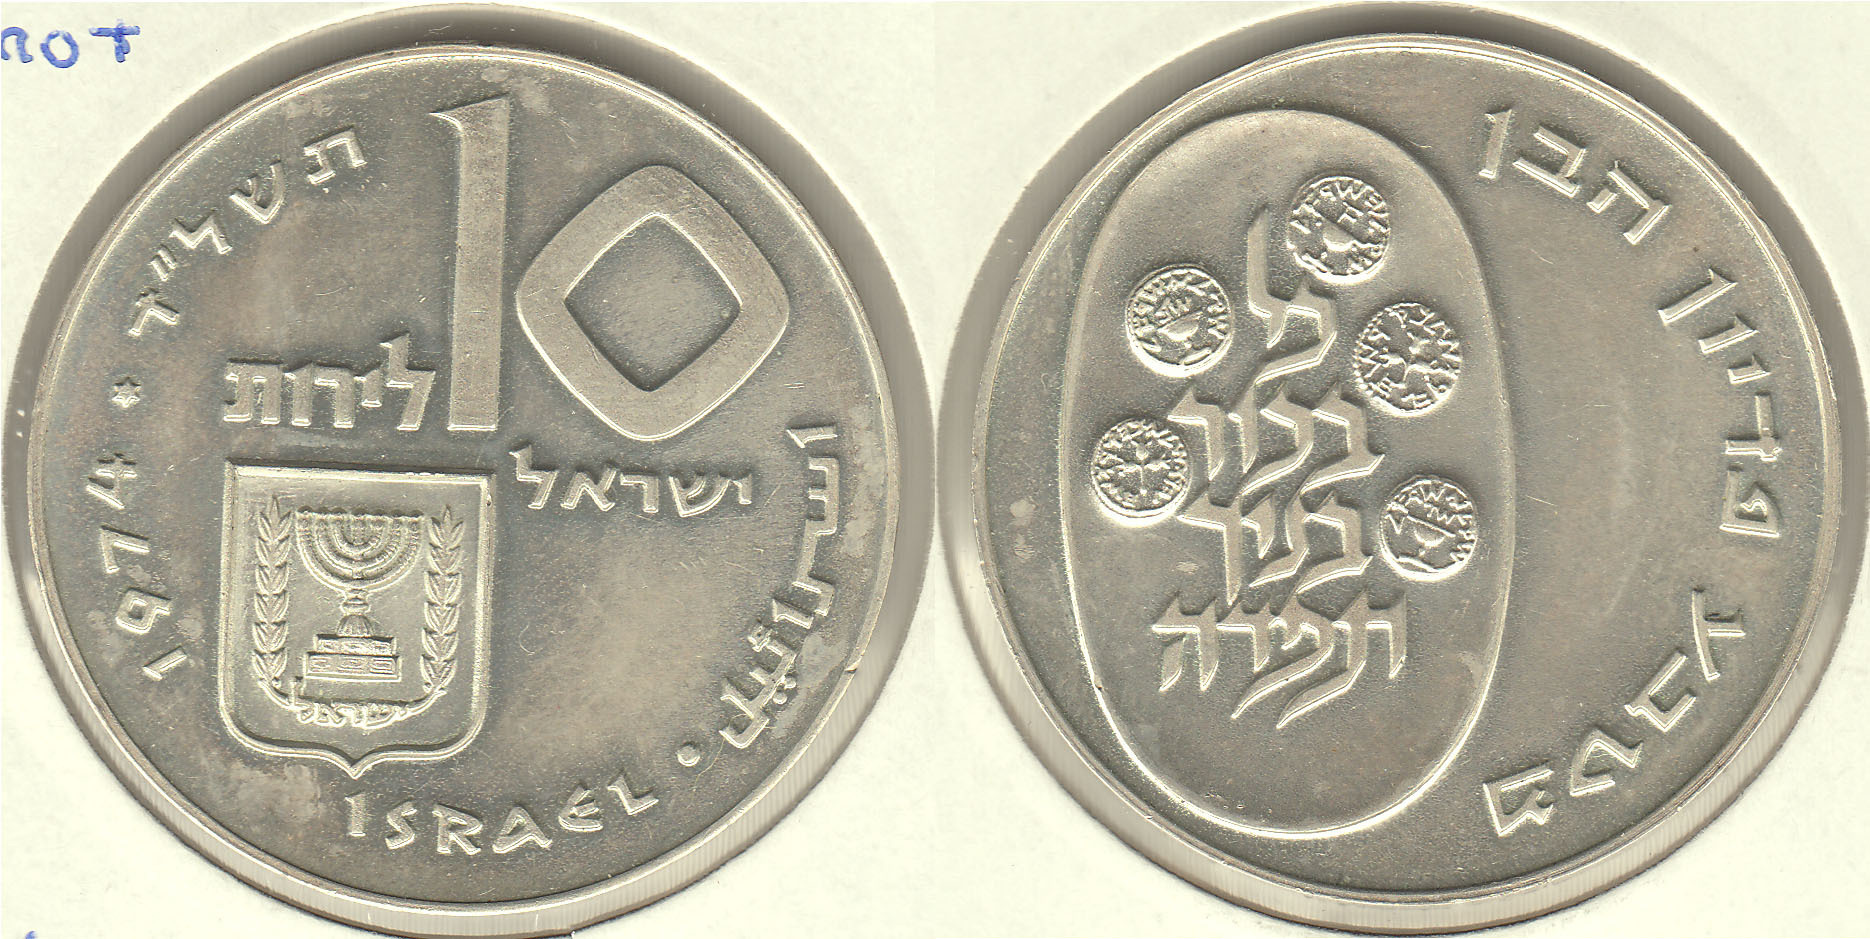 ISRAEL. 10 LIROT DE 1974. PLATA 0.900. (4)